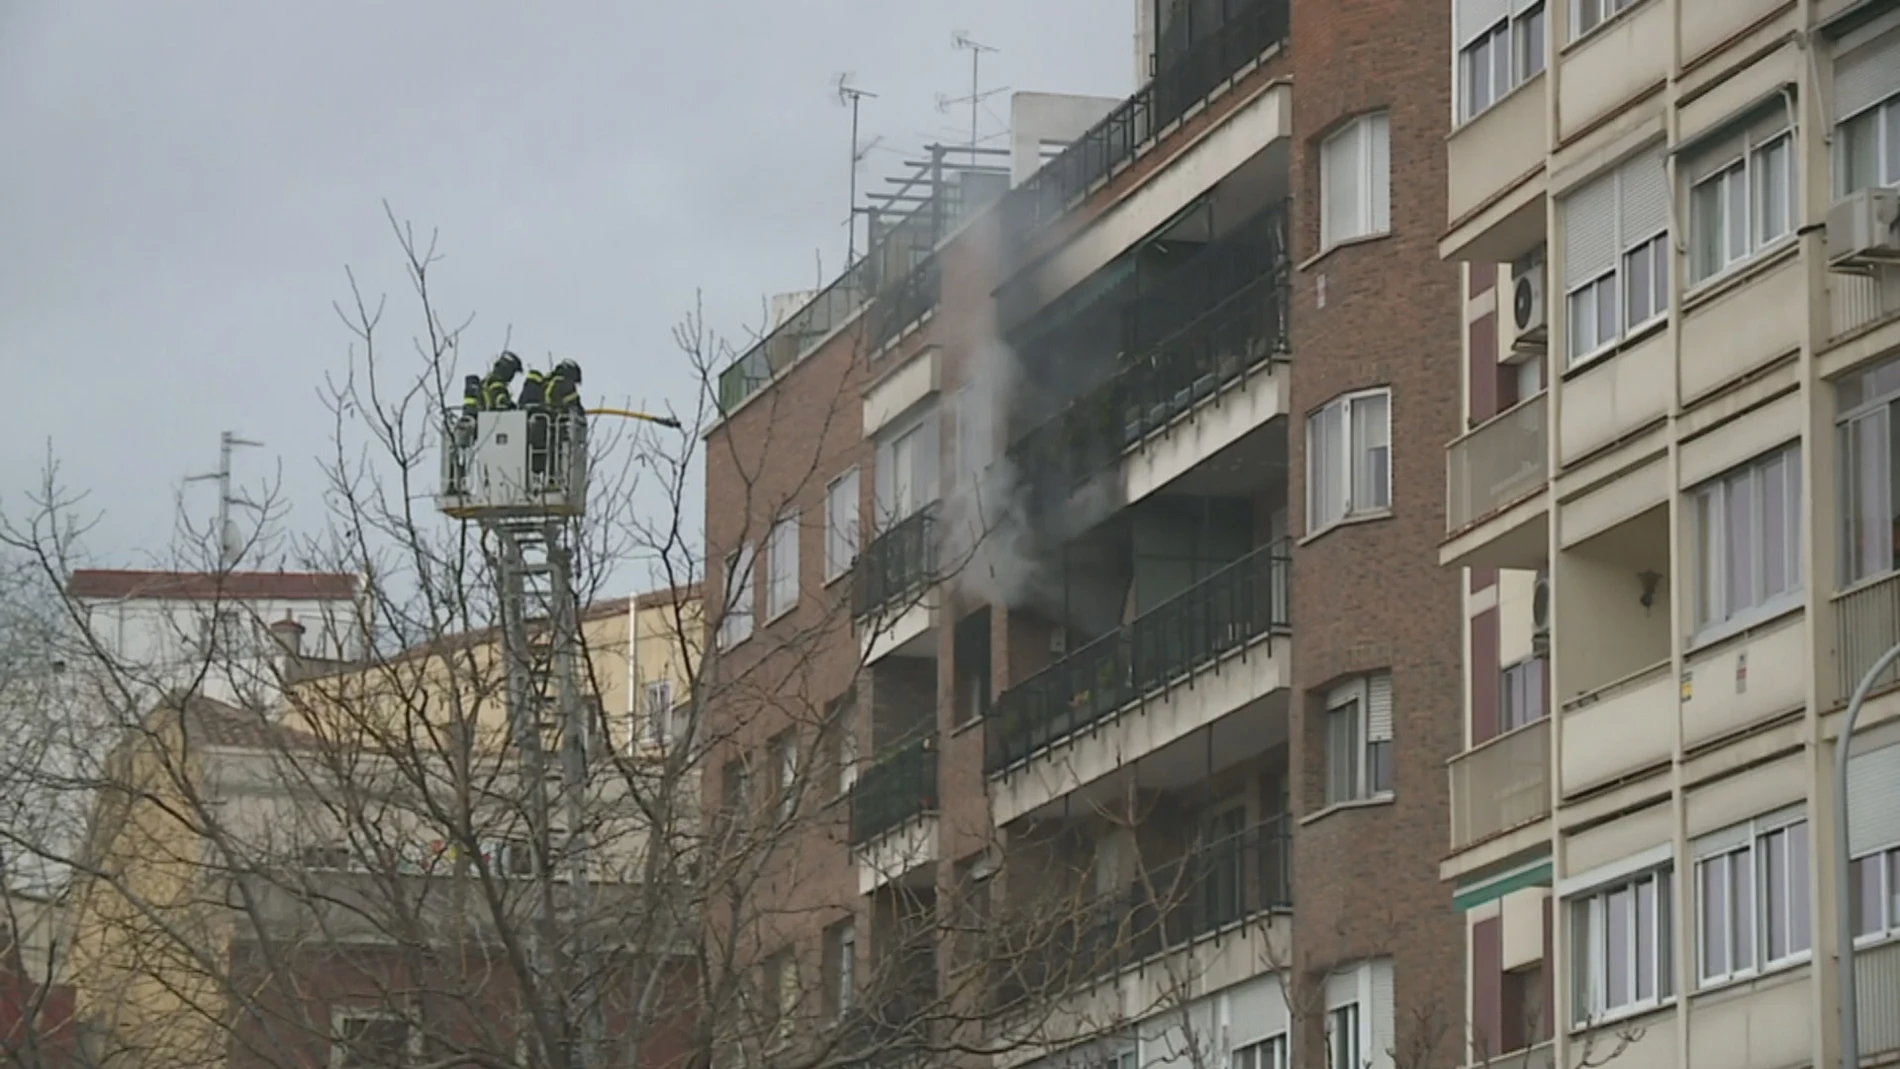 Mueren dos ancianos en el incendio en una vivienda de la zona de Ventas, Madrid